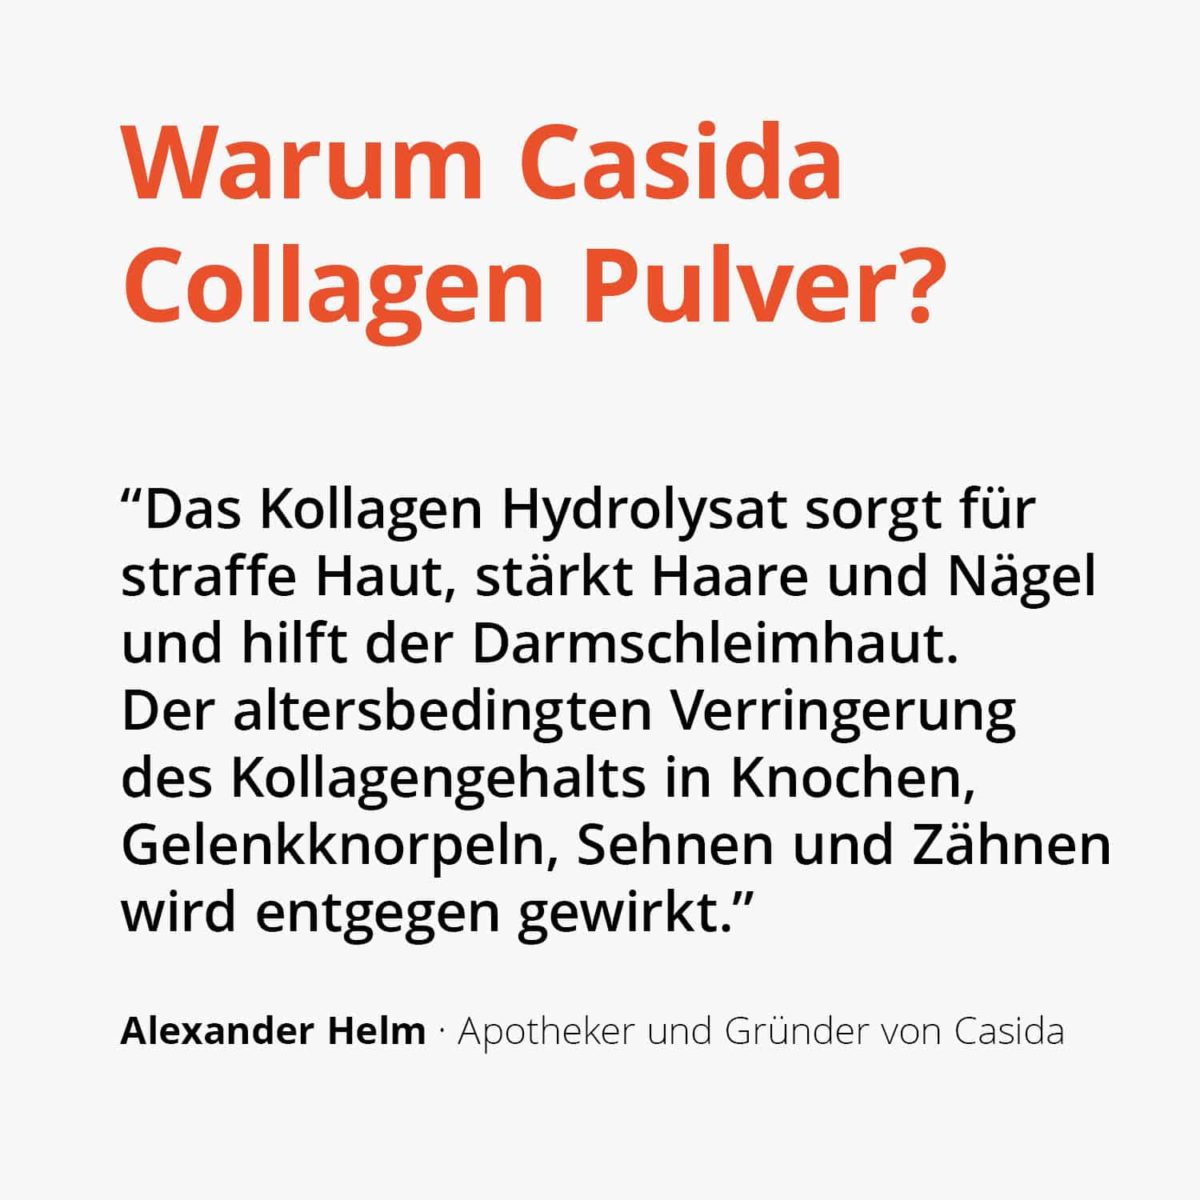 Collagen Pulver - Kollagen Hydrolysat